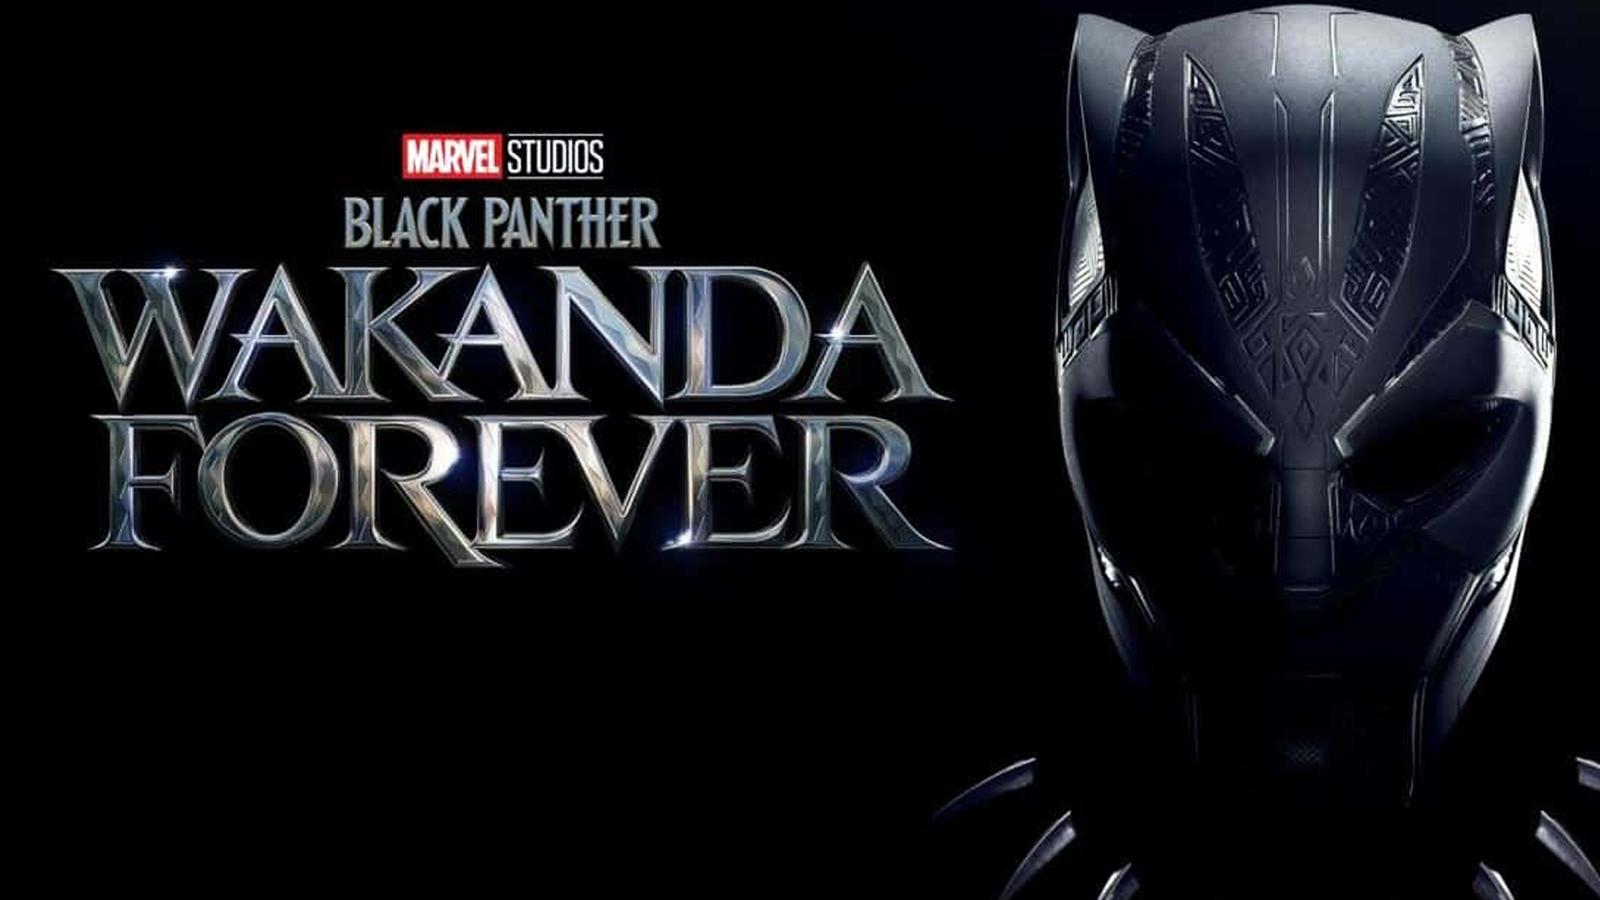 shuri as black panther in black panther wakanda forever